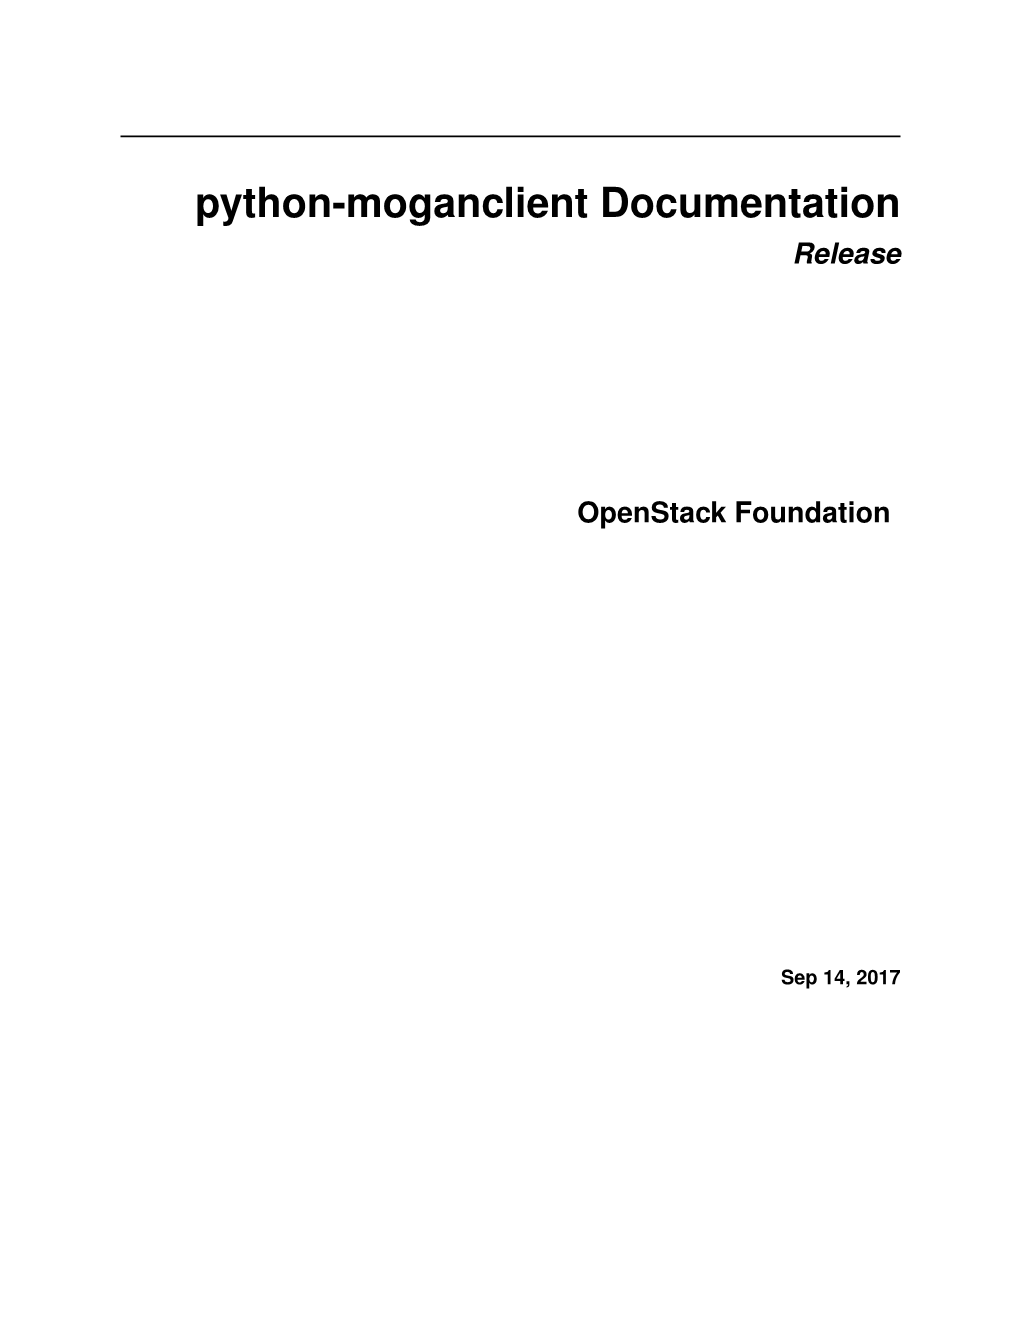 Python-Moganclient Documentation Release